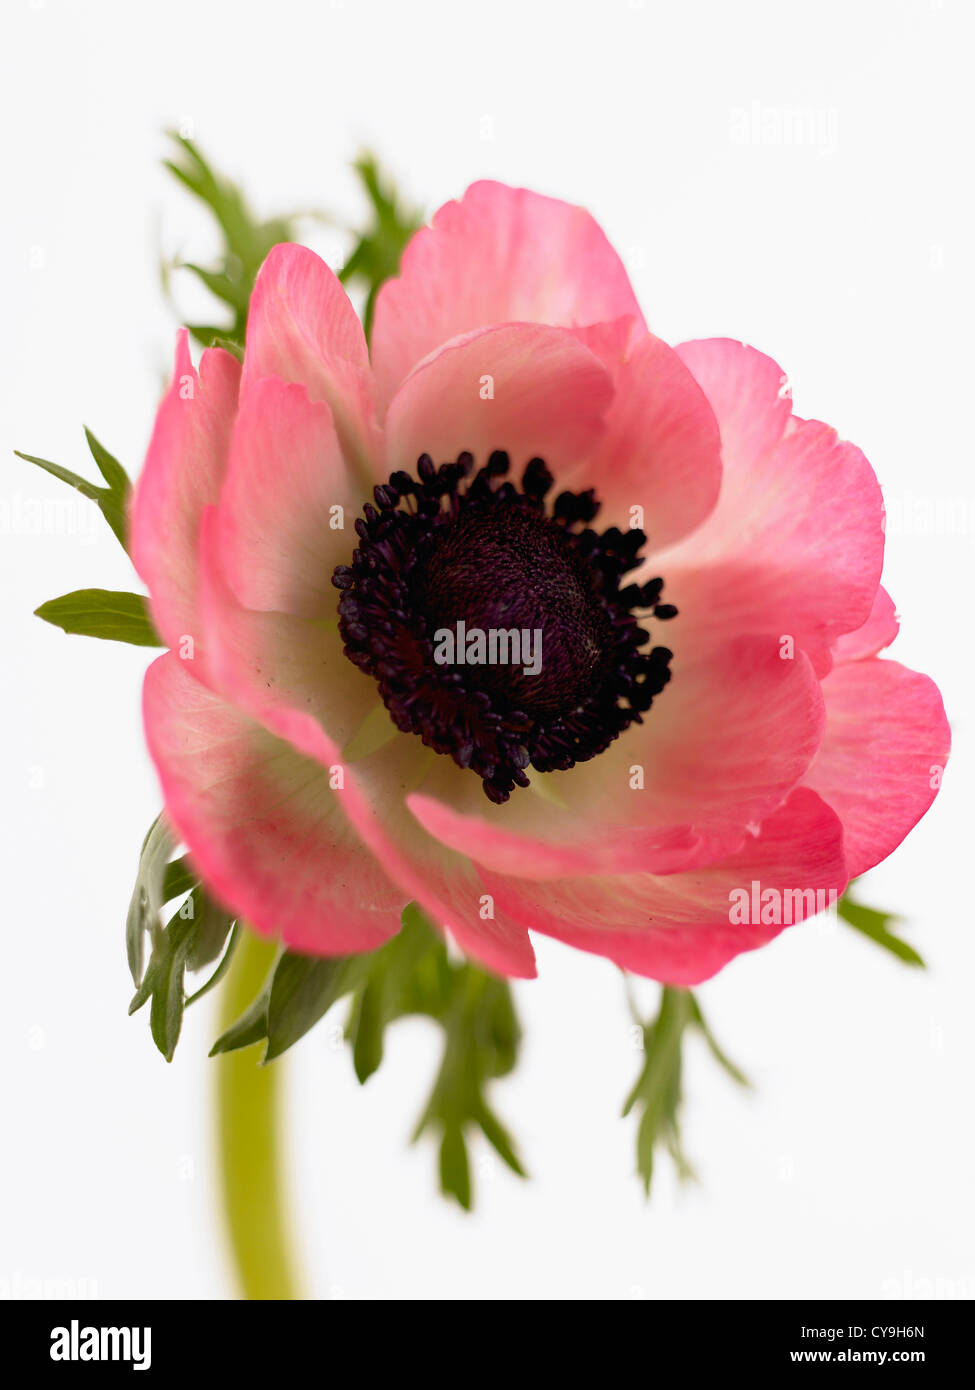 Anemone coronaria, giardino anemone, unico aprire il fiore rosa su uno stelo contro uno sfondo bianco. Foto Stock